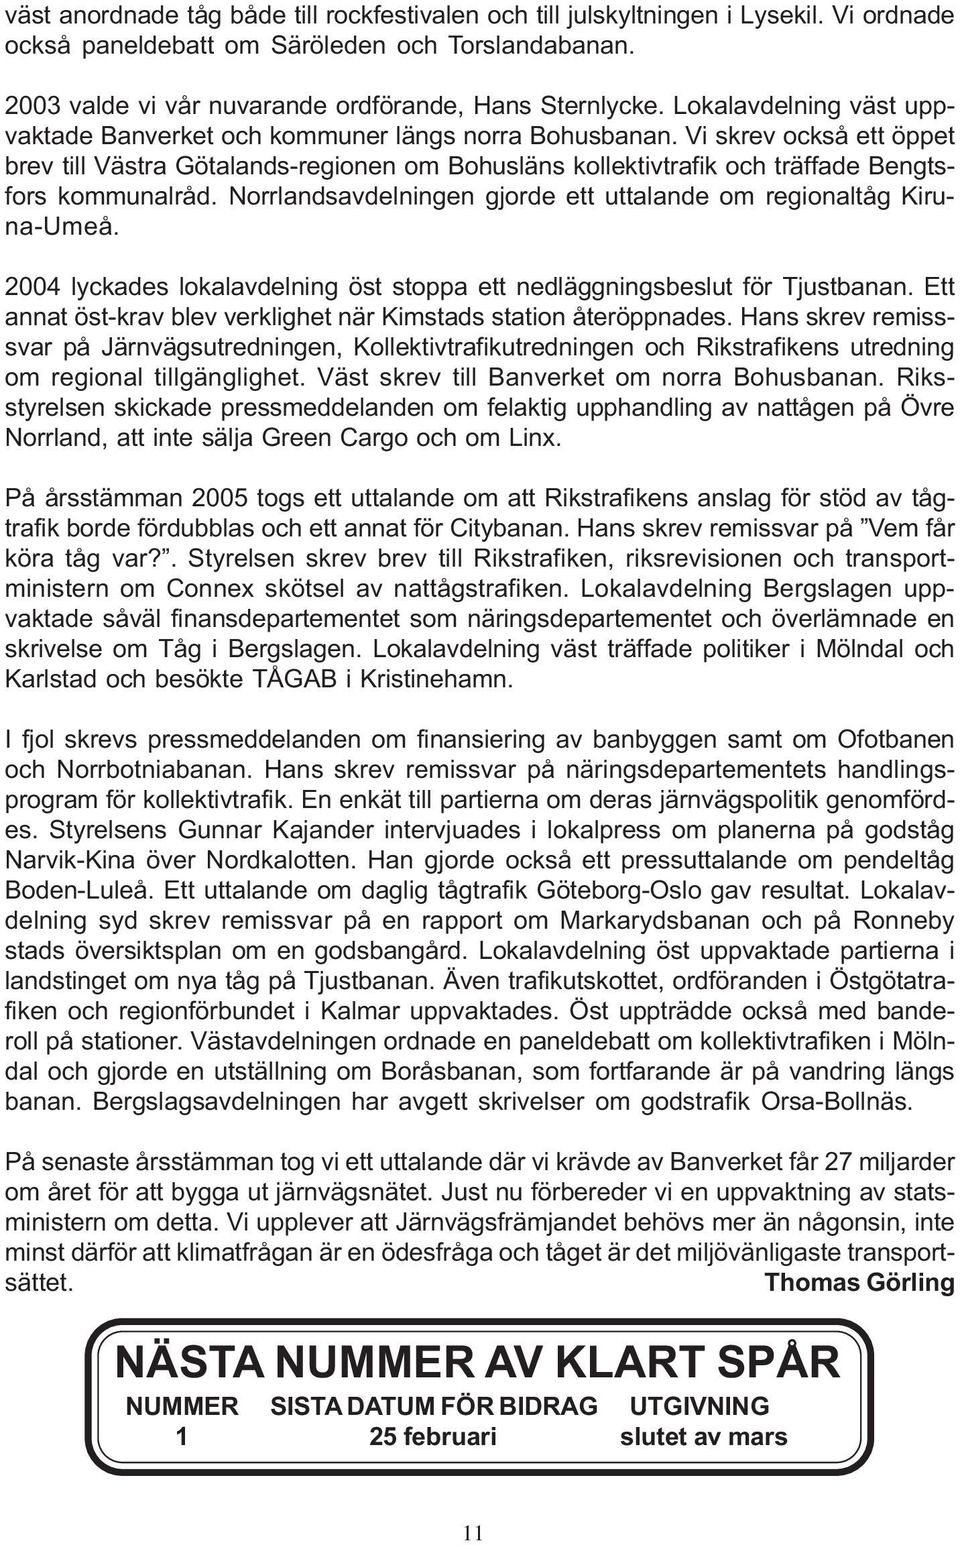 Vi skrev också ett öppet brev till Västra Götalands-regionen om Bohusläns kollektivtrafik och träffade Bengtsfors kommunalråd. Norrlandsavdelningen gjorde ett uttalande om regionaltåg Kiruna-Umeå.